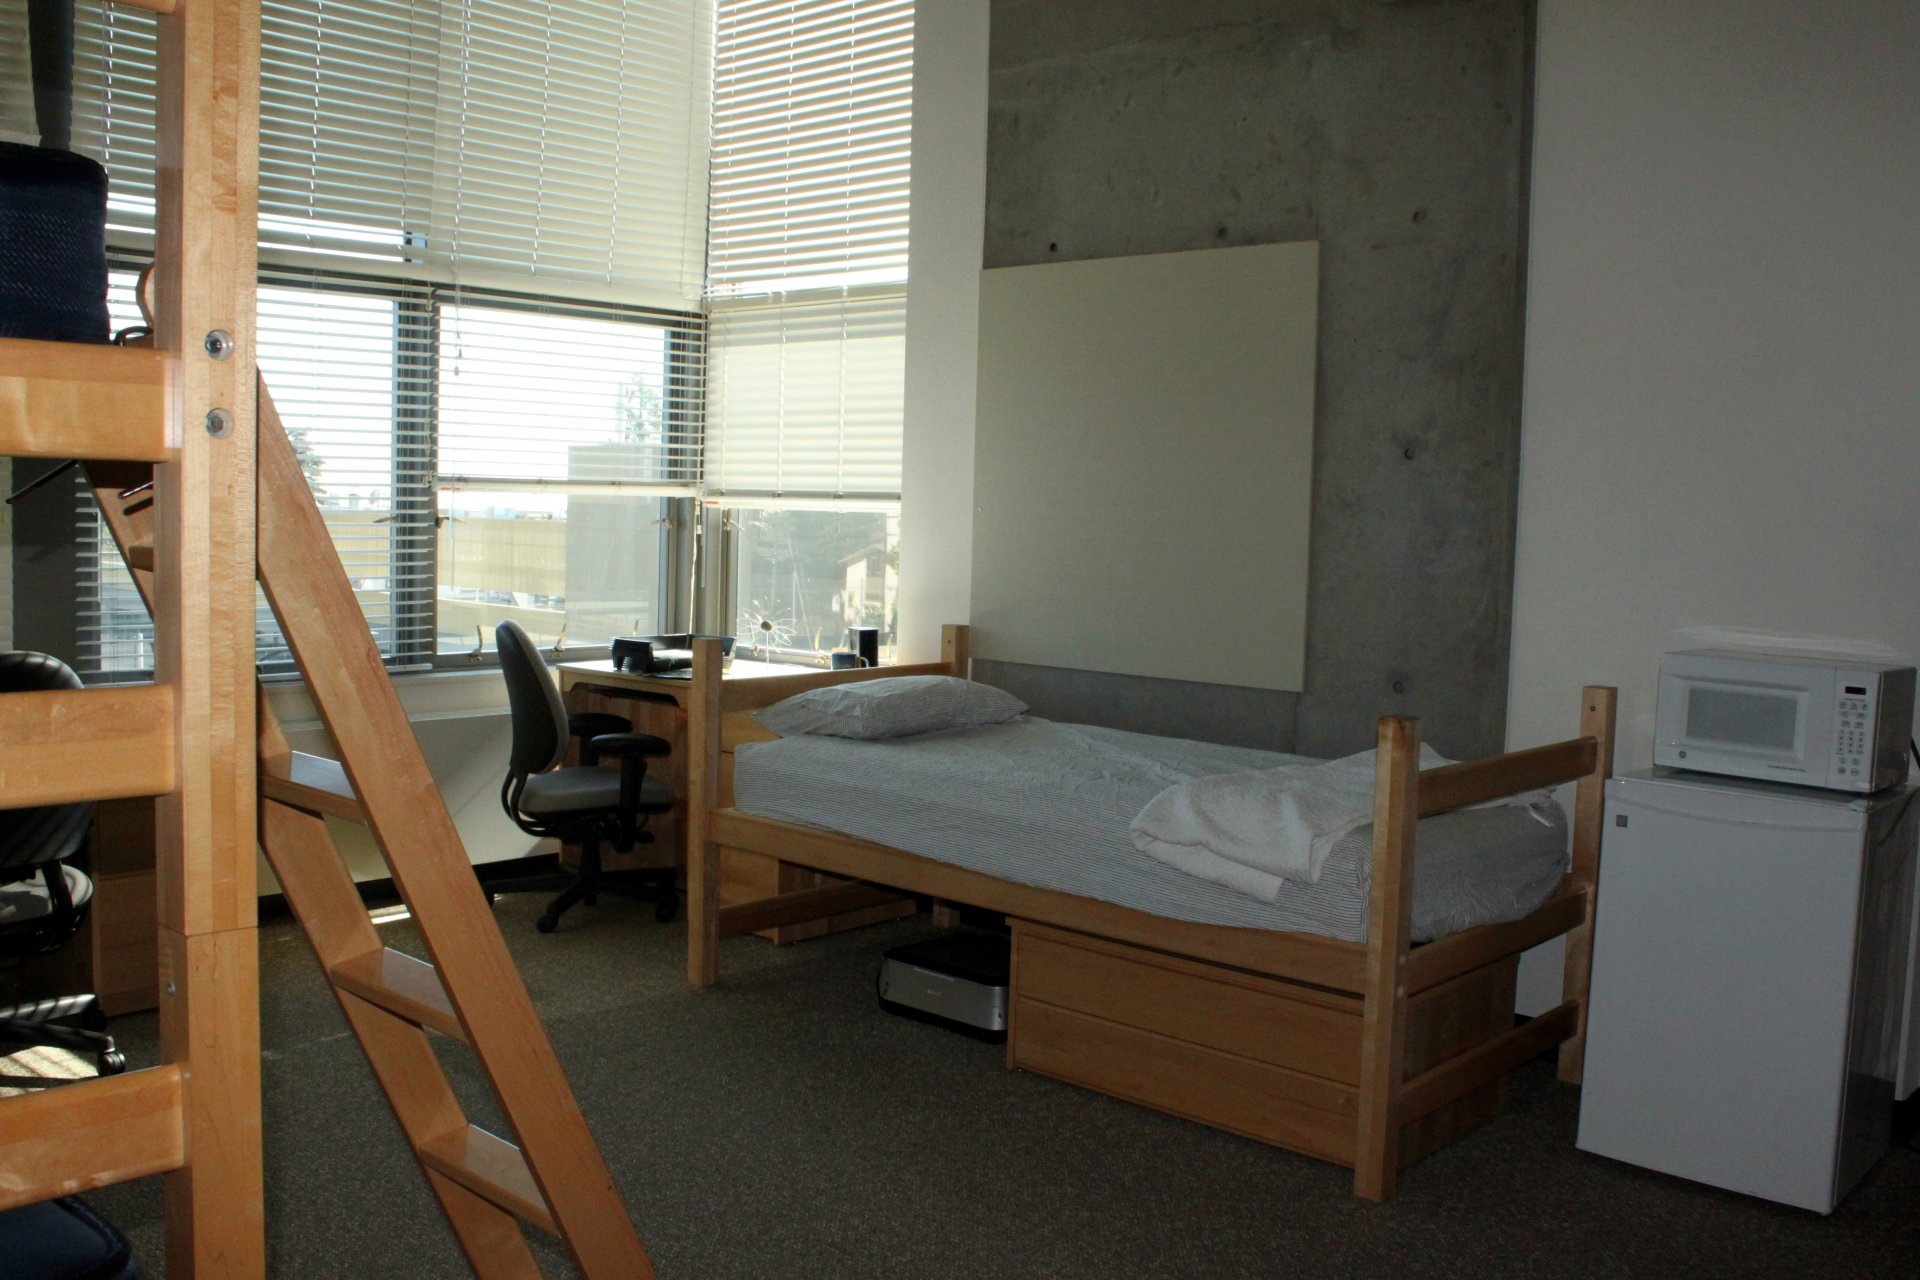 Dorm room in Slottman Building at University of California, Berkeley. | Photo courtesy Prayitno Hadinata